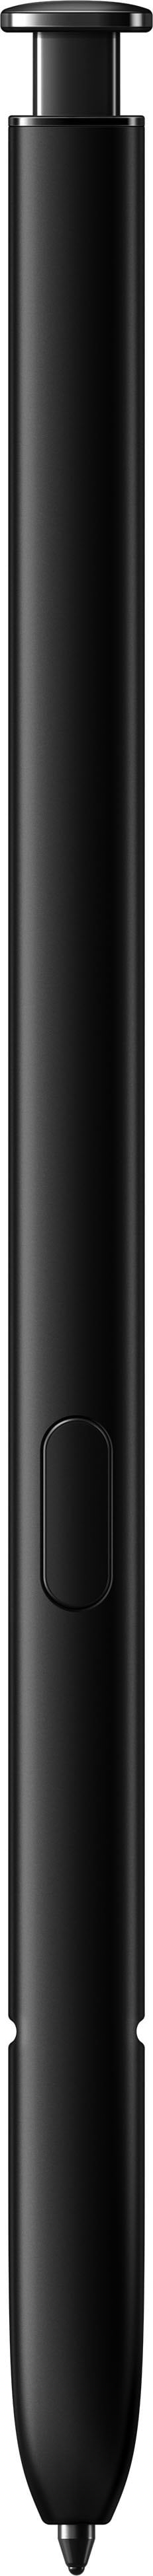 Samsung - Galaxy S22 Ultra 128GB - Phantom Black (Verizon)_13